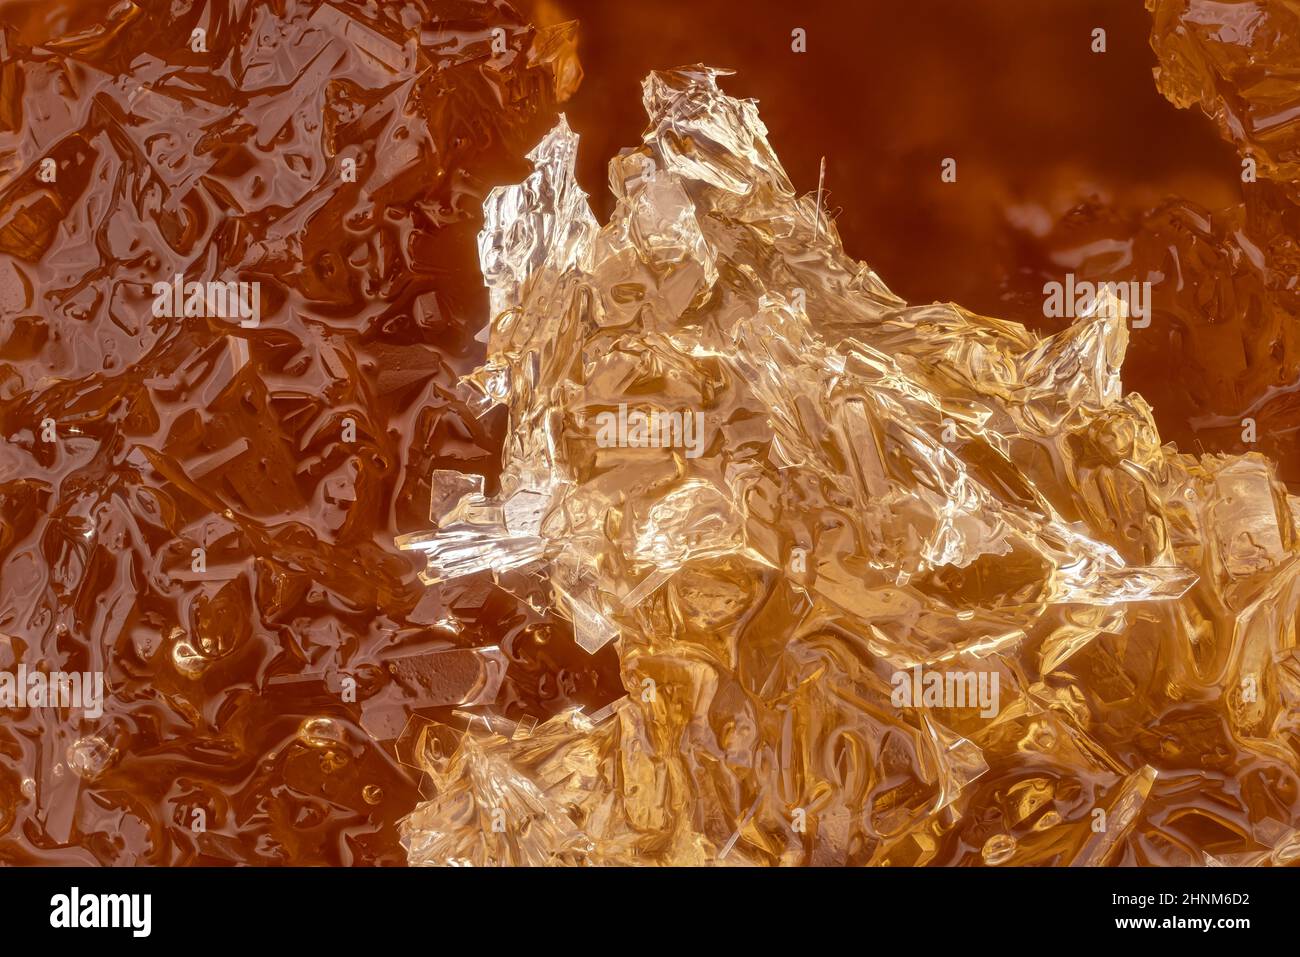 Miel cristalizada Liceo africano , cristales blancos que forman formas regulares. Fotografía del microscopio, anchura de la imagen 9mm. Foto de stock